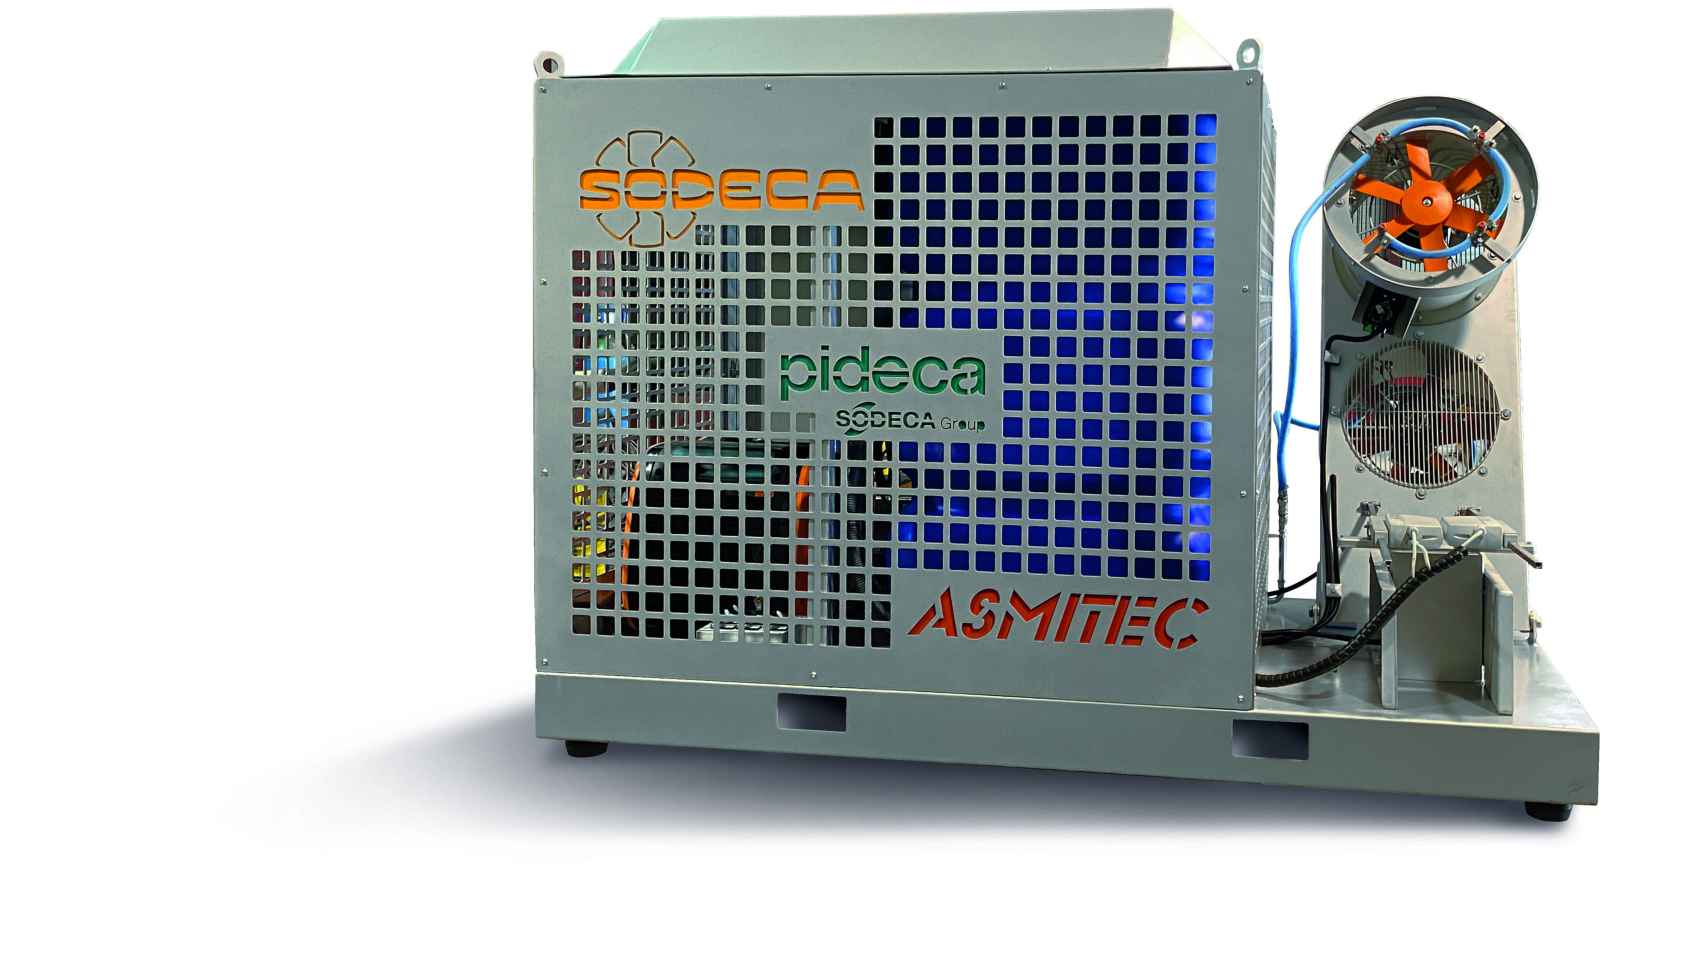 El DISINFECT-500, el equipo desinfectante creado por Sodeca / SODECA